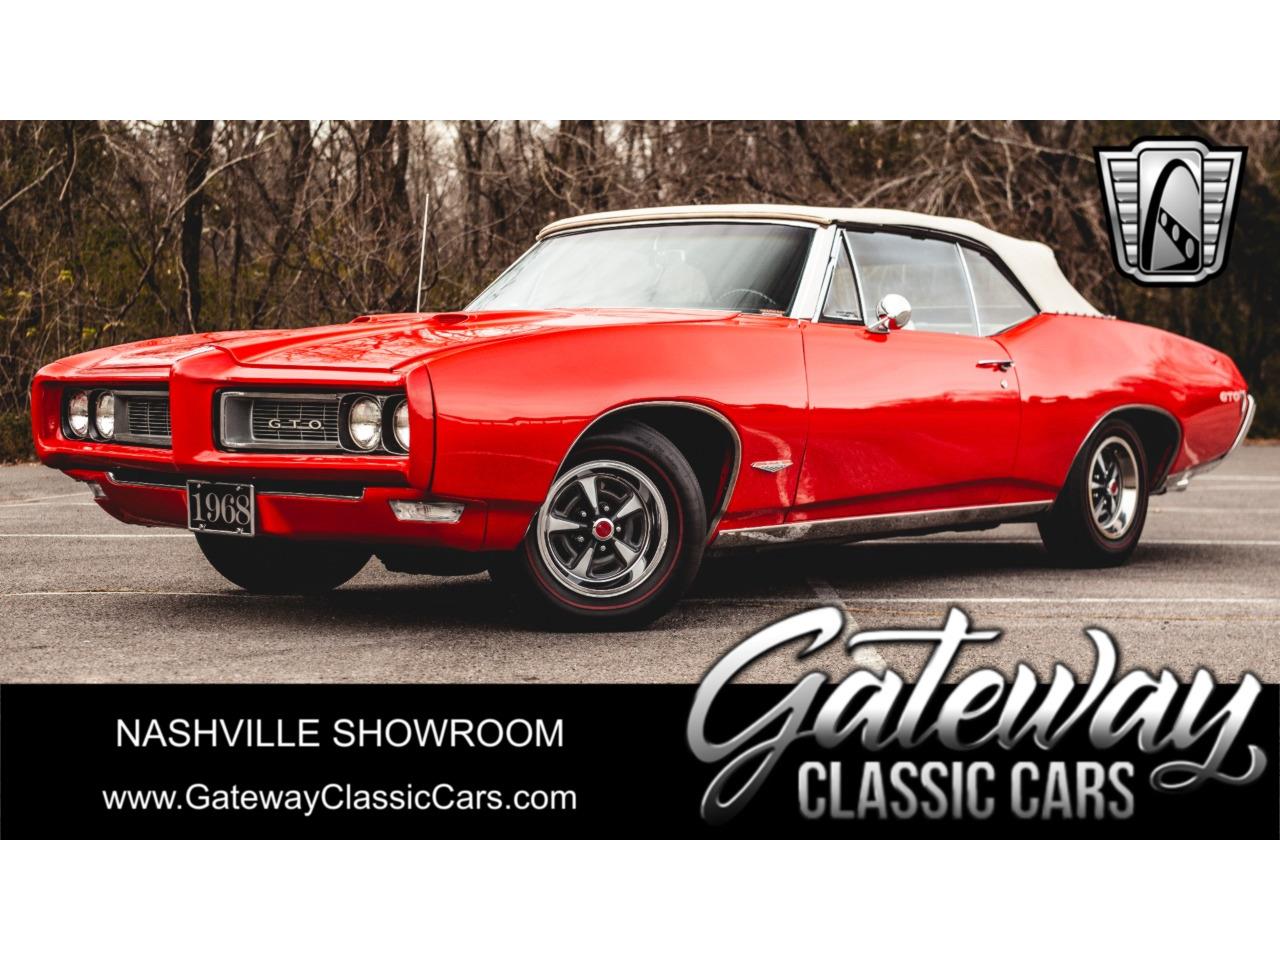 For Sale: 1968 Pontiac GTO in O'Fallon, Illinois for sale in O Fallon, IL